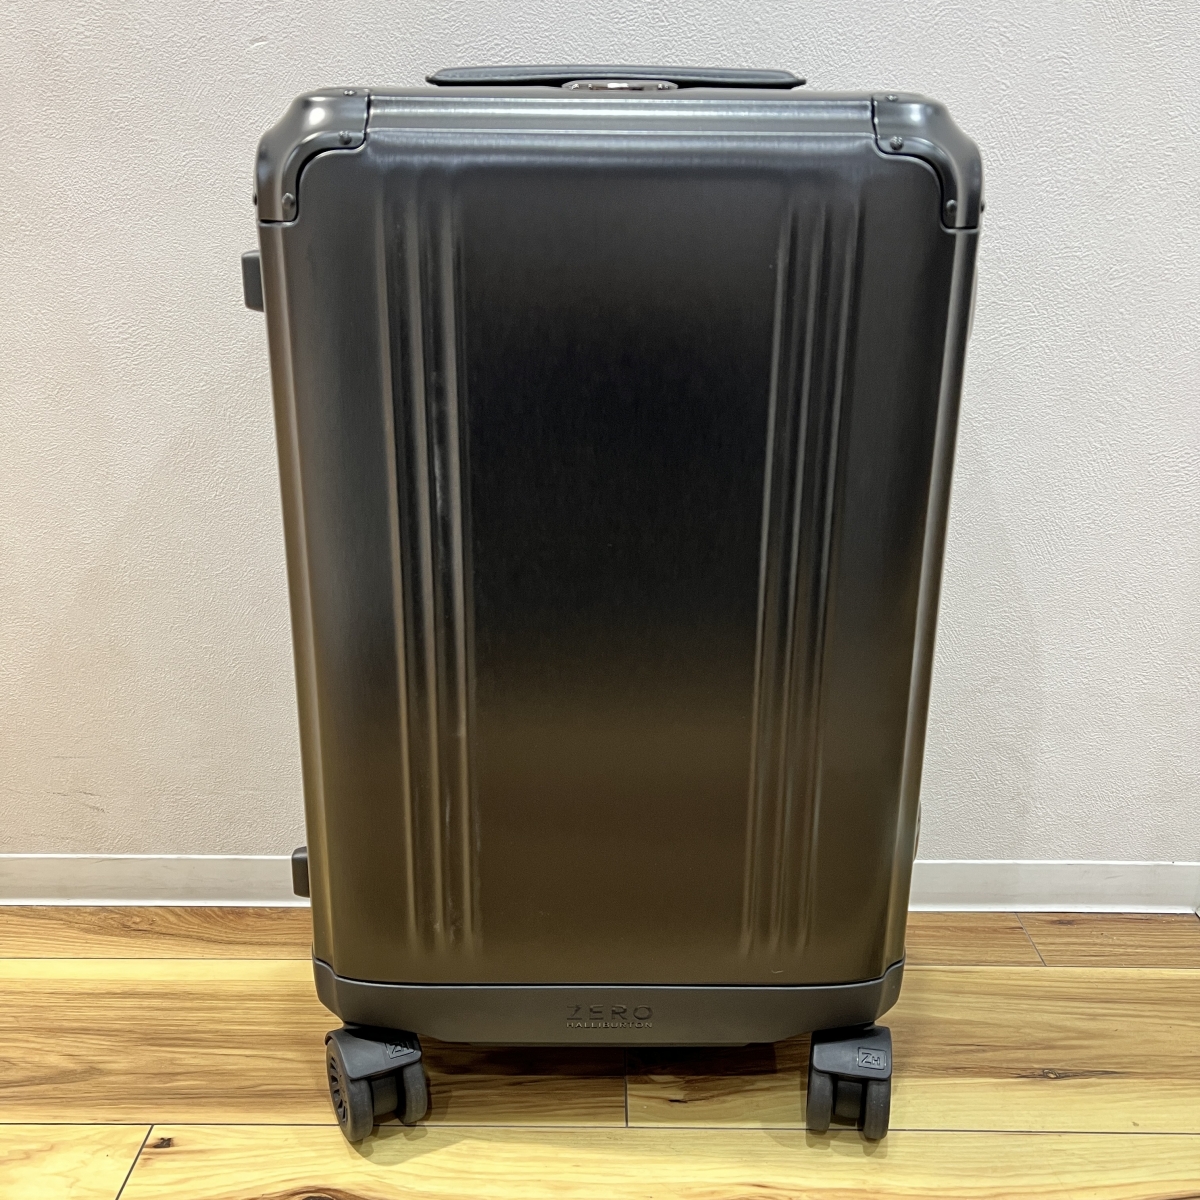 ゼロハリバートンの4輪 クラシックアルミニウム 33L スーツケースの買取実績です。